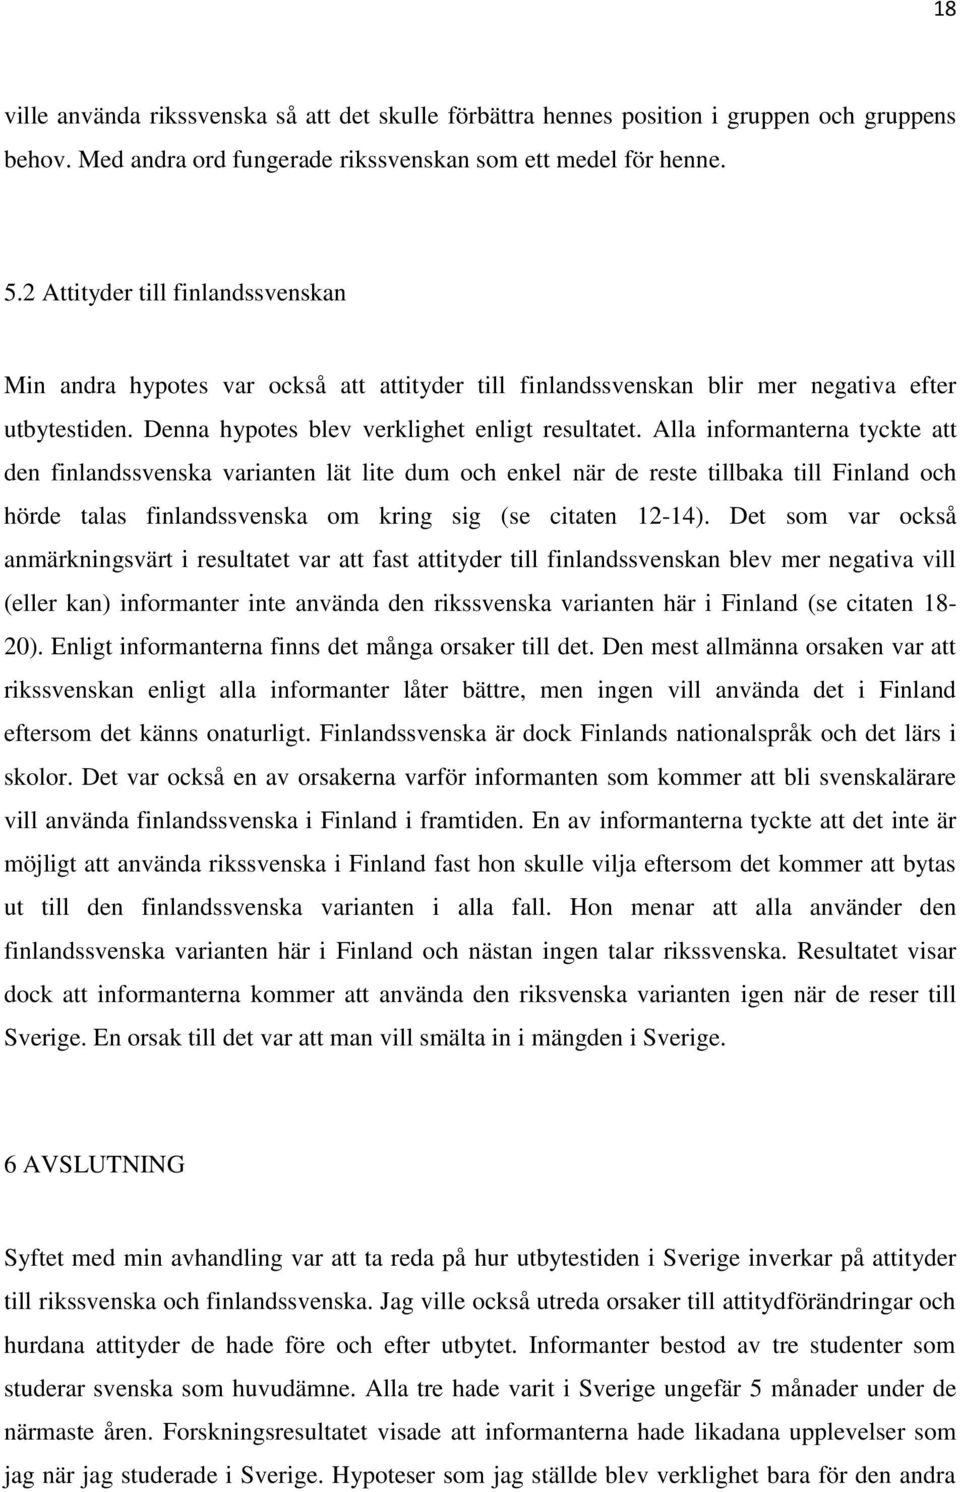 Alla informanterna tyckte att den finlandssvenska varianten lät lite dum och enkel när de reste tillbaka till Finland och hörde talas finlandssvenska om kring sig (se citaten 12-14).